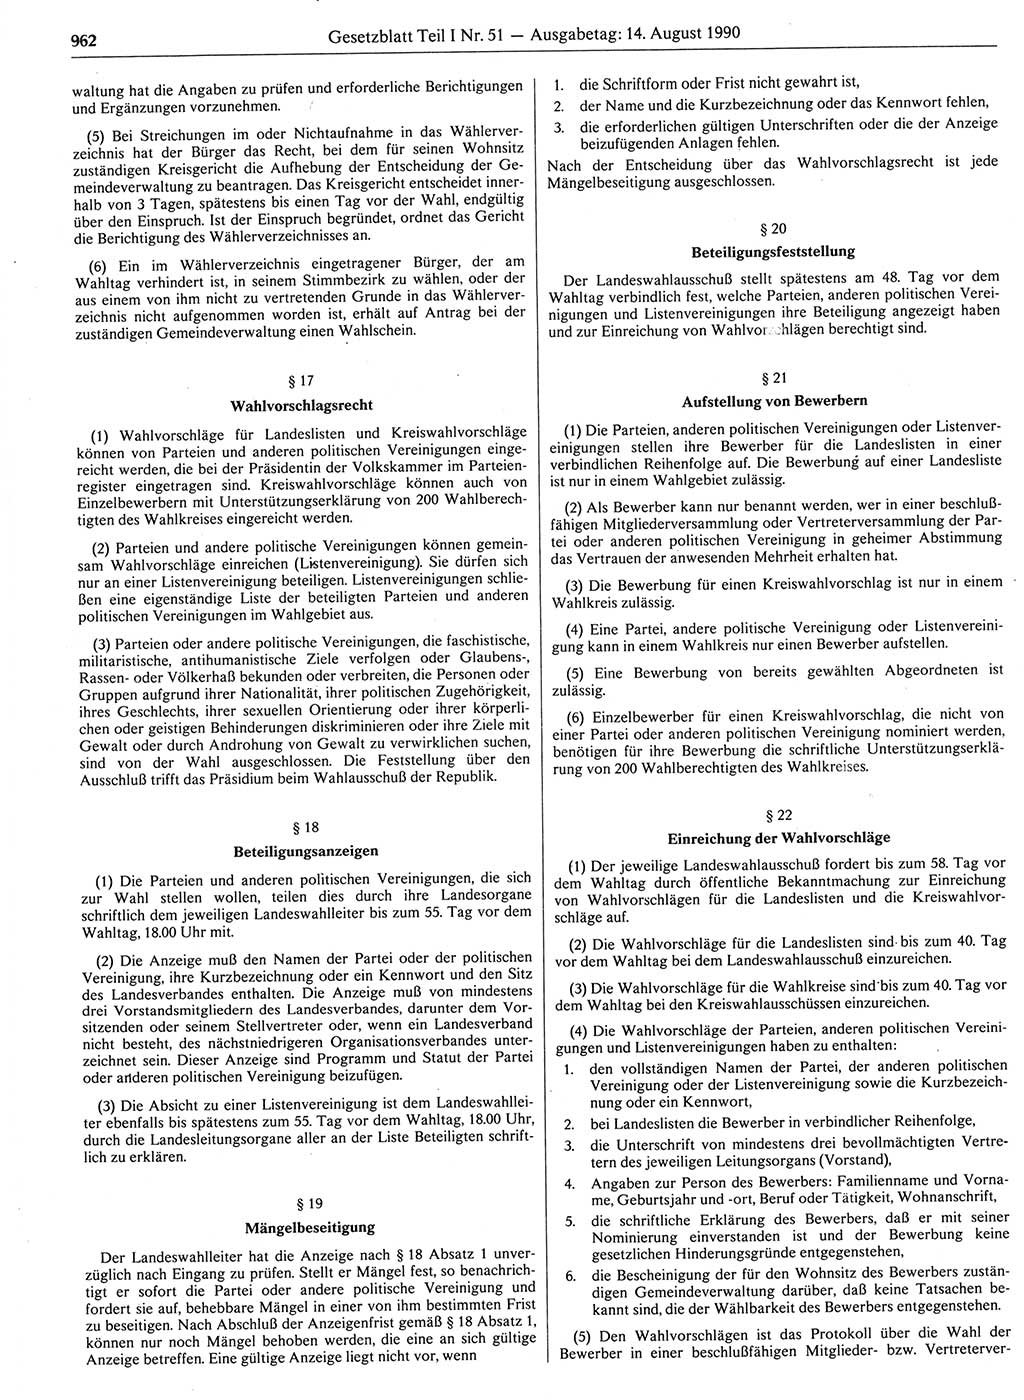 Gesetzblatt (GBl.) der Deutschen Demokratischen Republik (DDR) Teil Ⅰ 1990, Seite 962 (GBl. DDR Ⅰ 1990, S. 962)